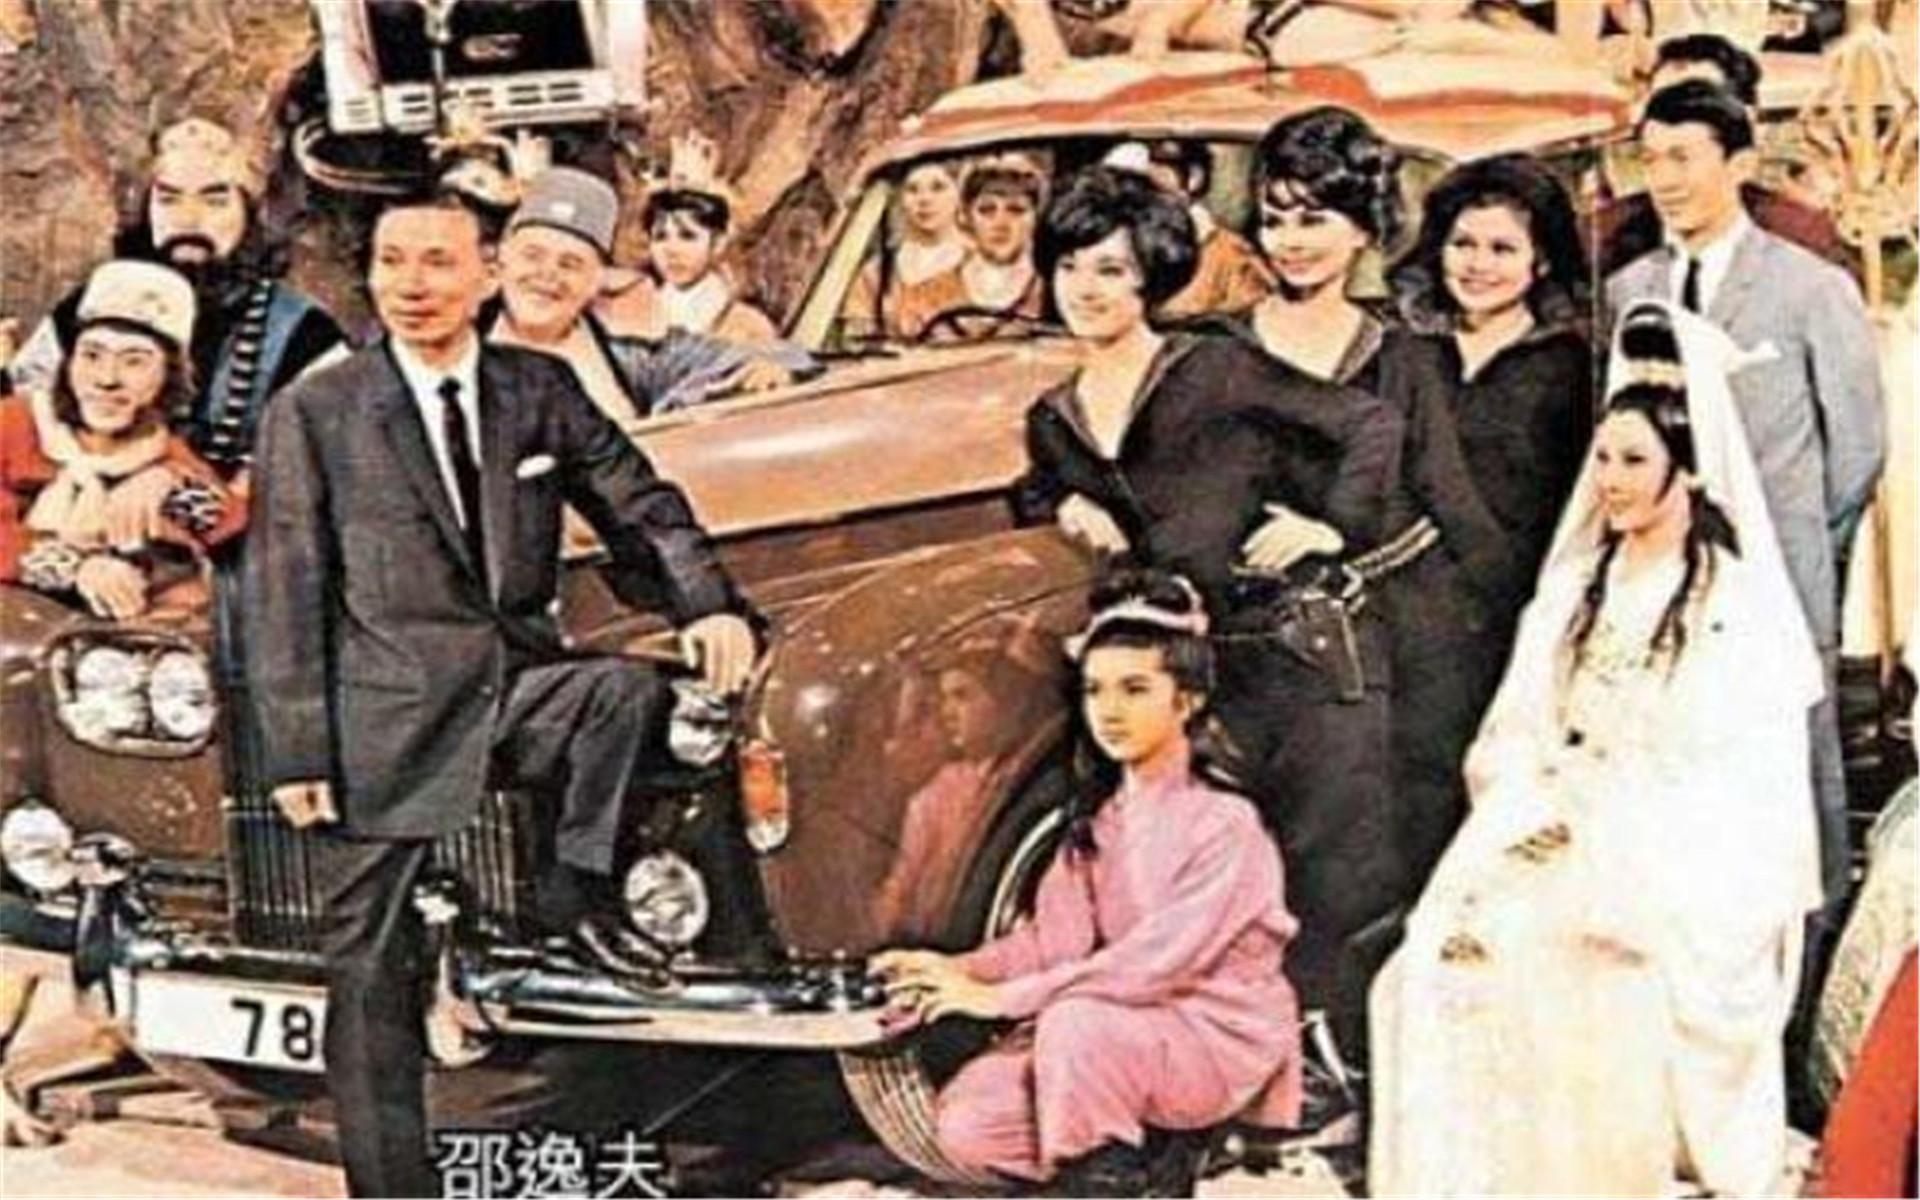 60年代邵逸夫捧红的10大绝色女星 图8最漂亮 古典美人 - 中国禁闻网